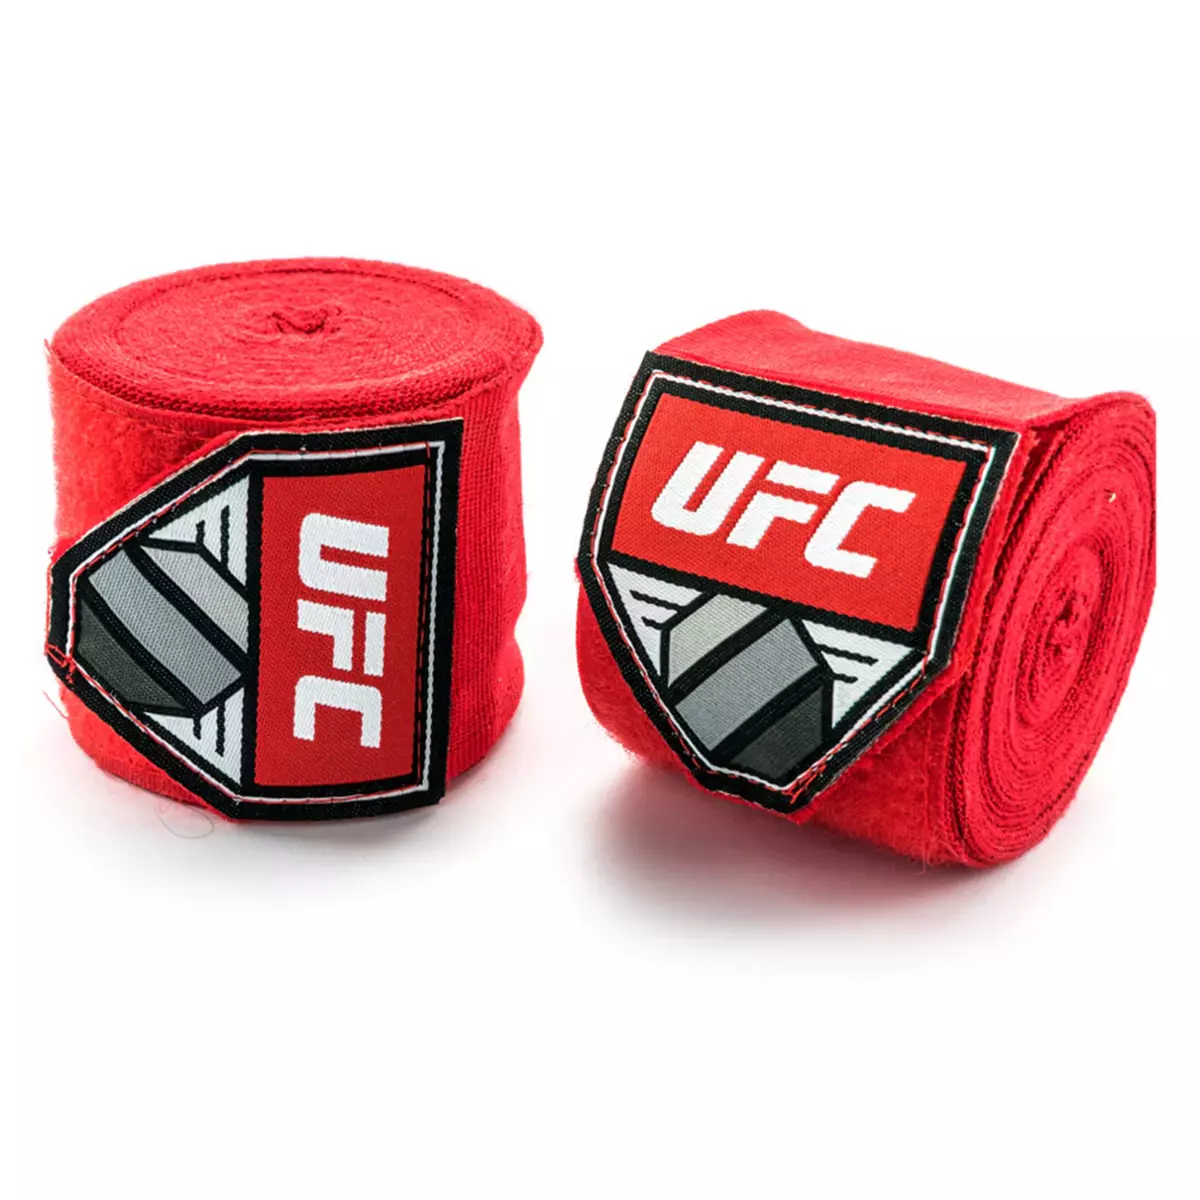 UFC Bandes de protection de boxe - UFC - Rouge - Taille 450 cm